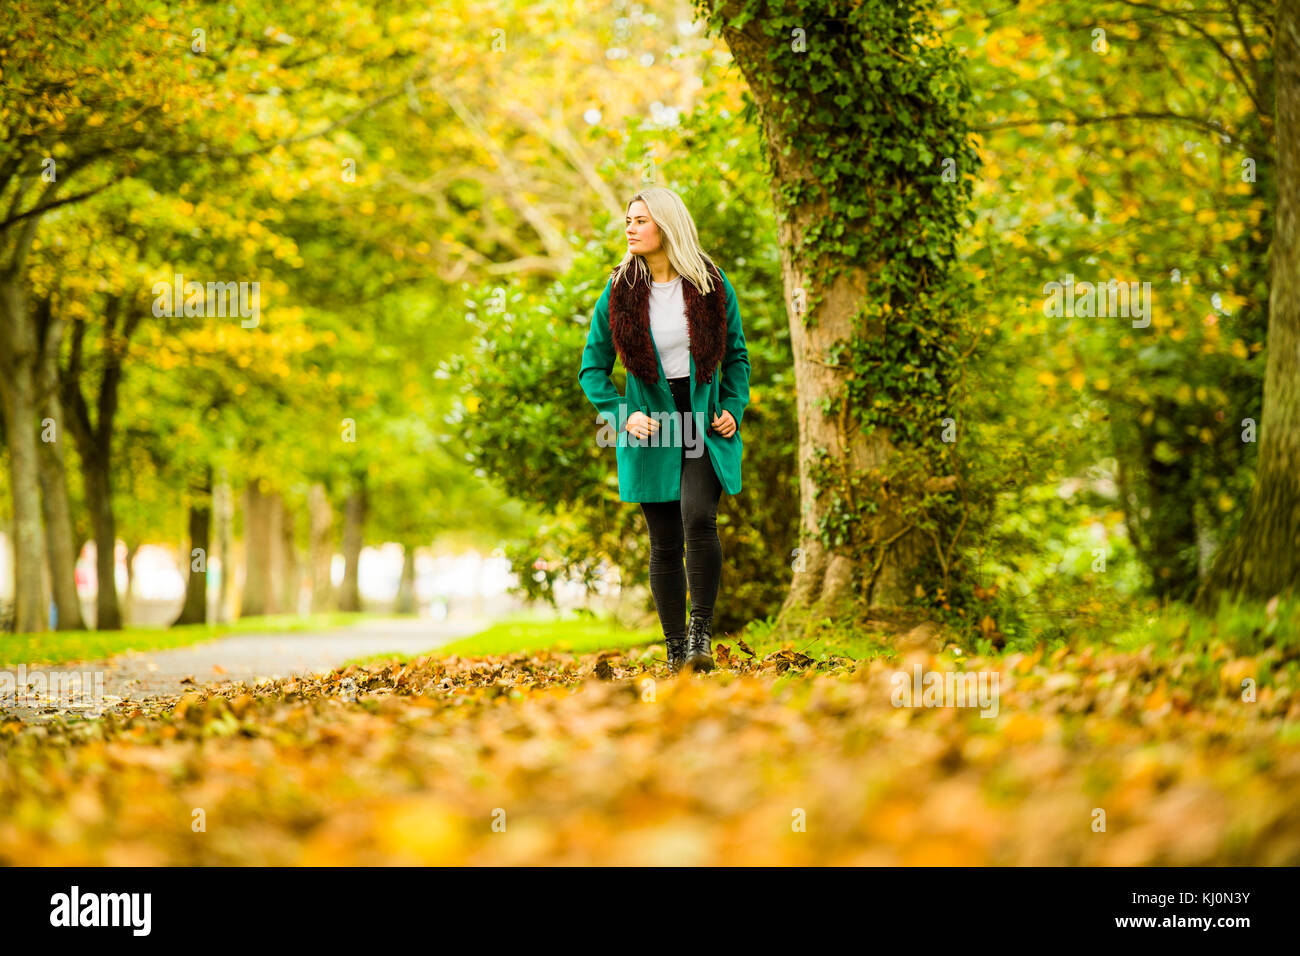 Jugendmädchen Modellierung in Großbritannien: Eine junge 16 jährige Pubertierende, trug einen Pelzbesatz grünen Mantel, Modellierung Walking im Freien an einem Herbsttag, Großbritannien Stockfoto